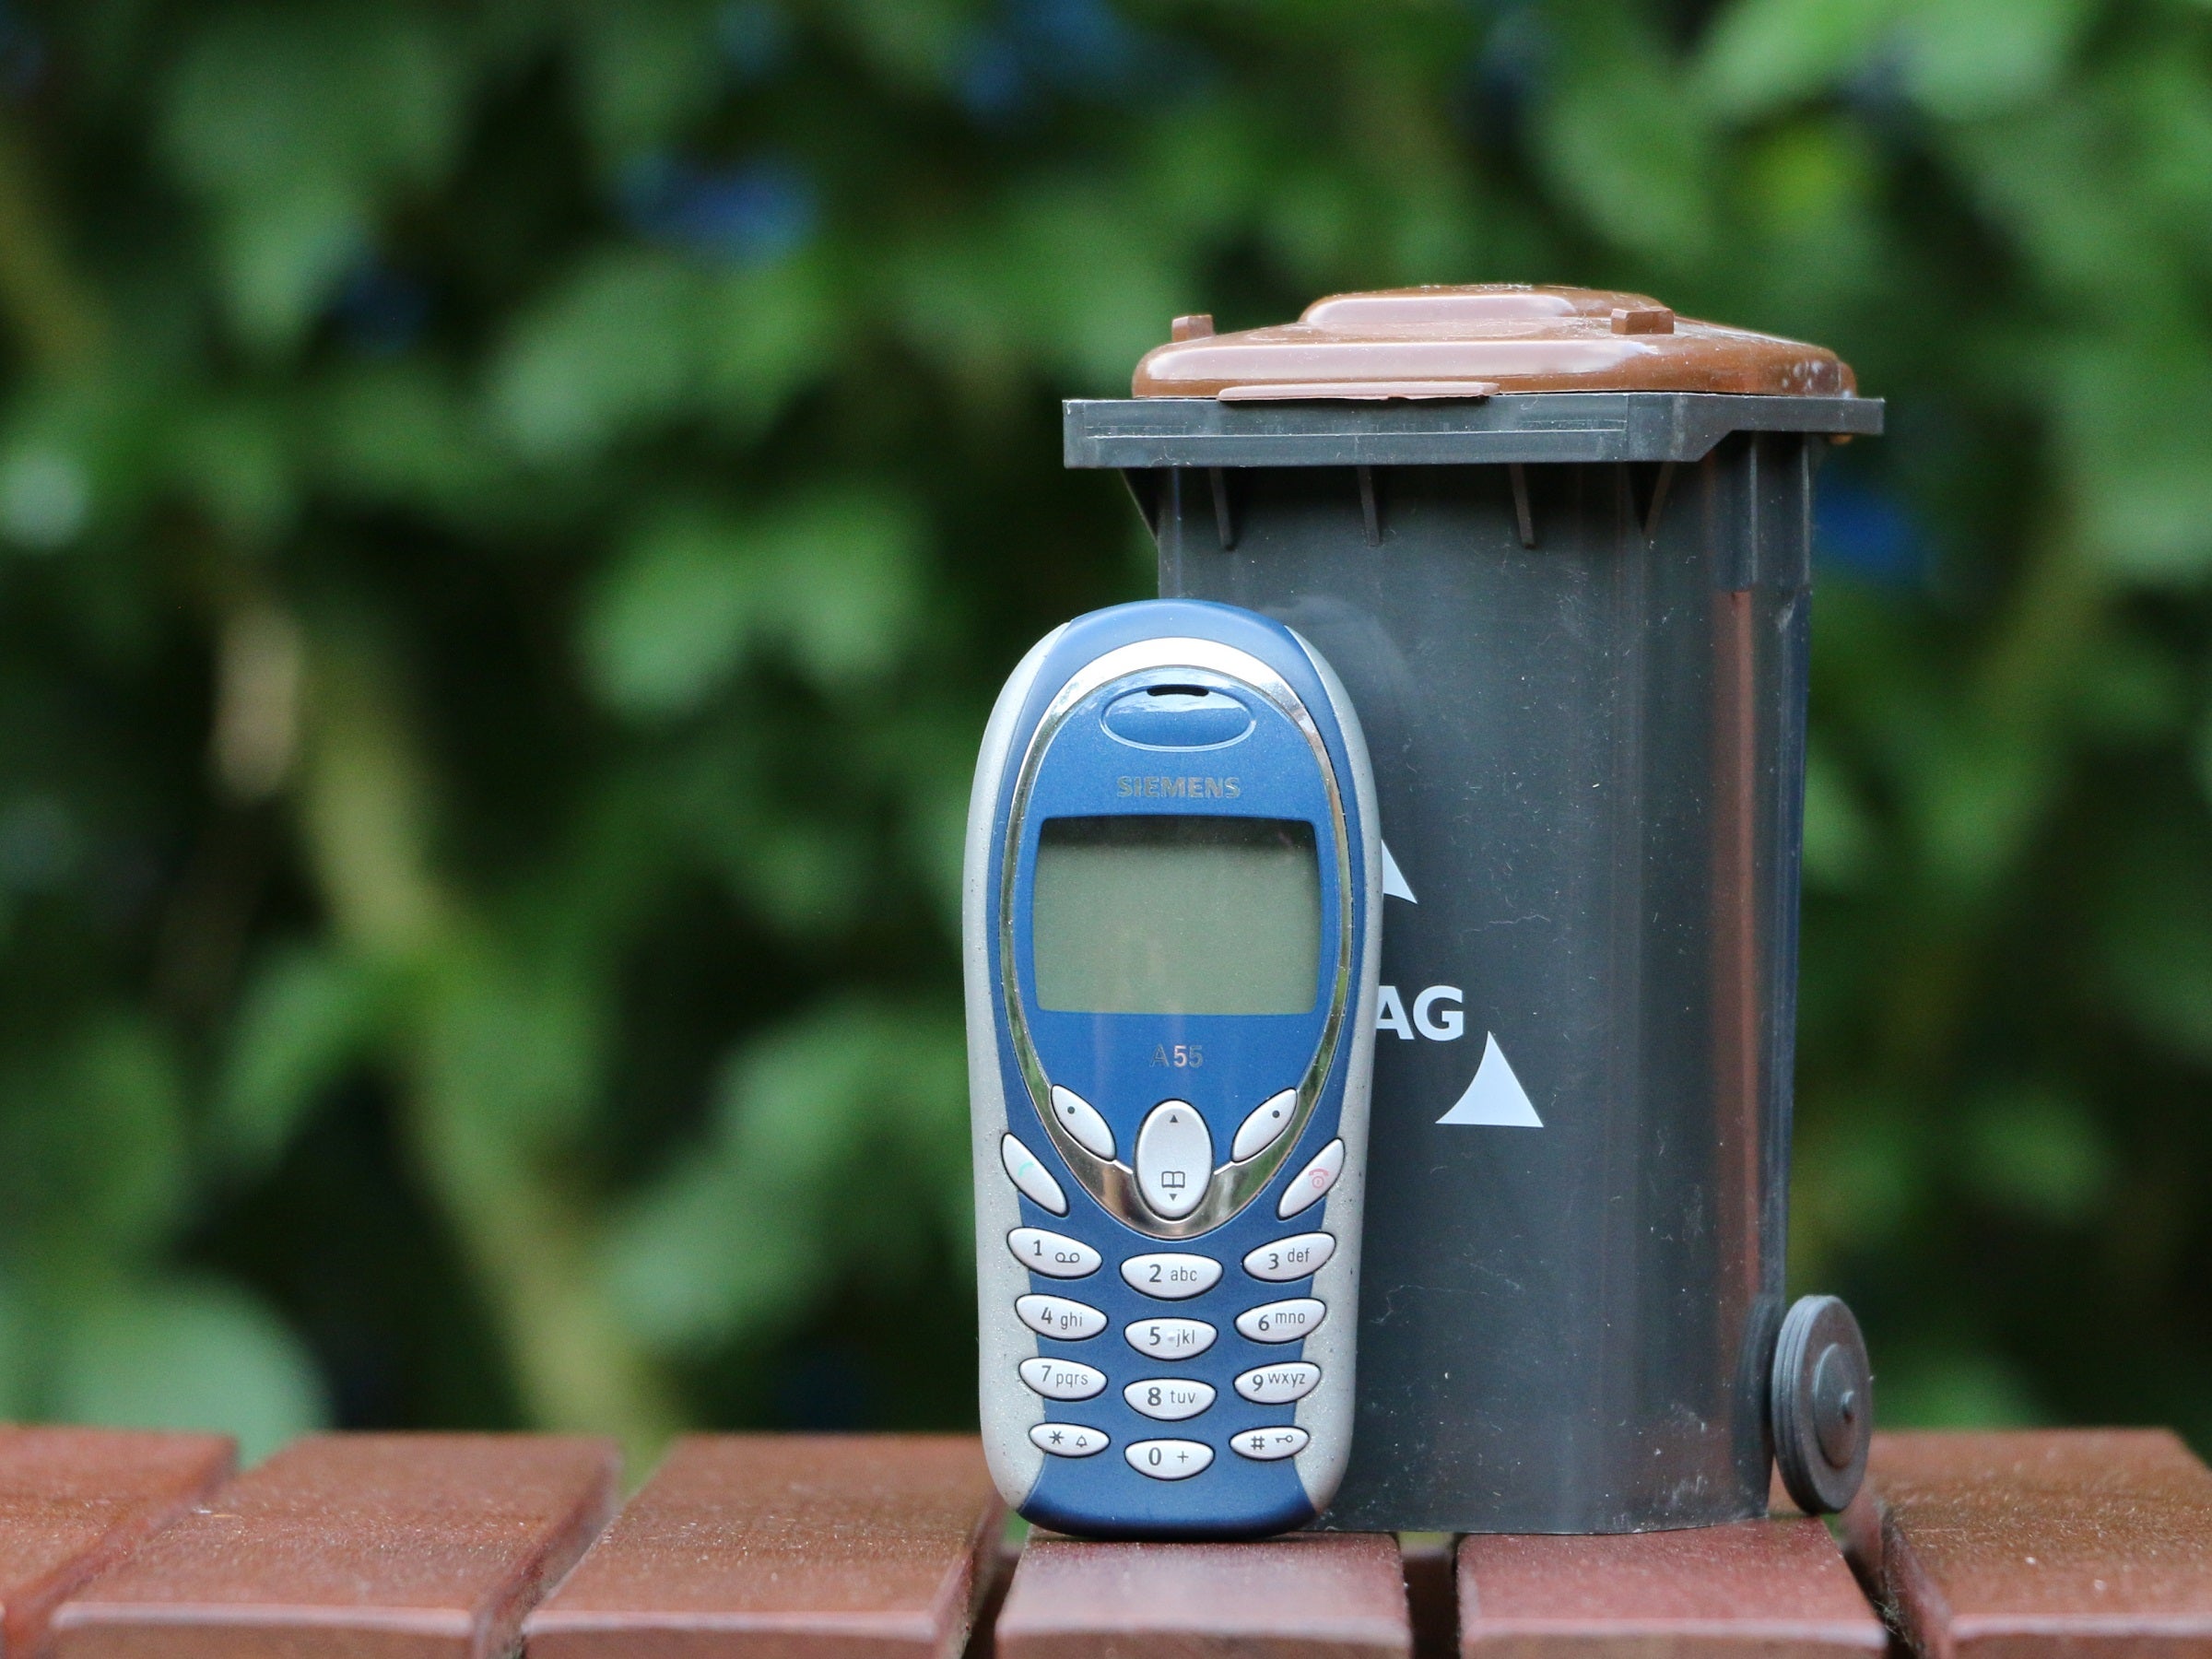 #Alte Handys entsorgen – so geht’s